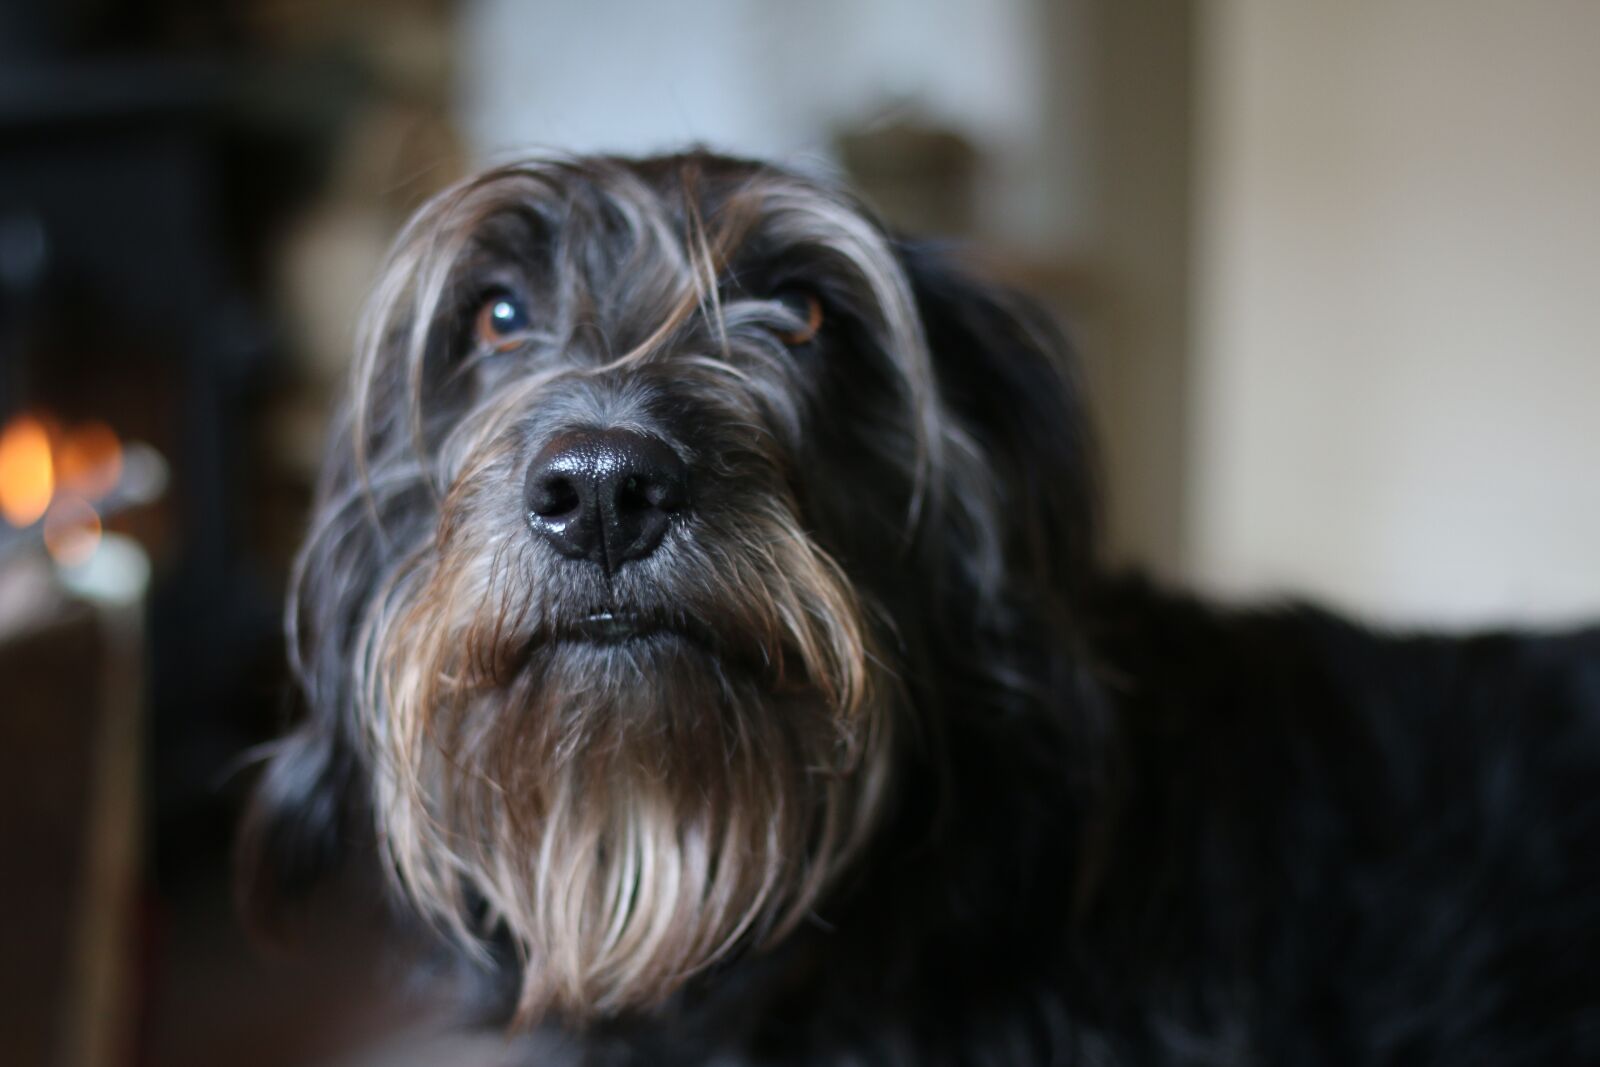 Canon EOS 70D sample photo. Dog, pet, portrait photography